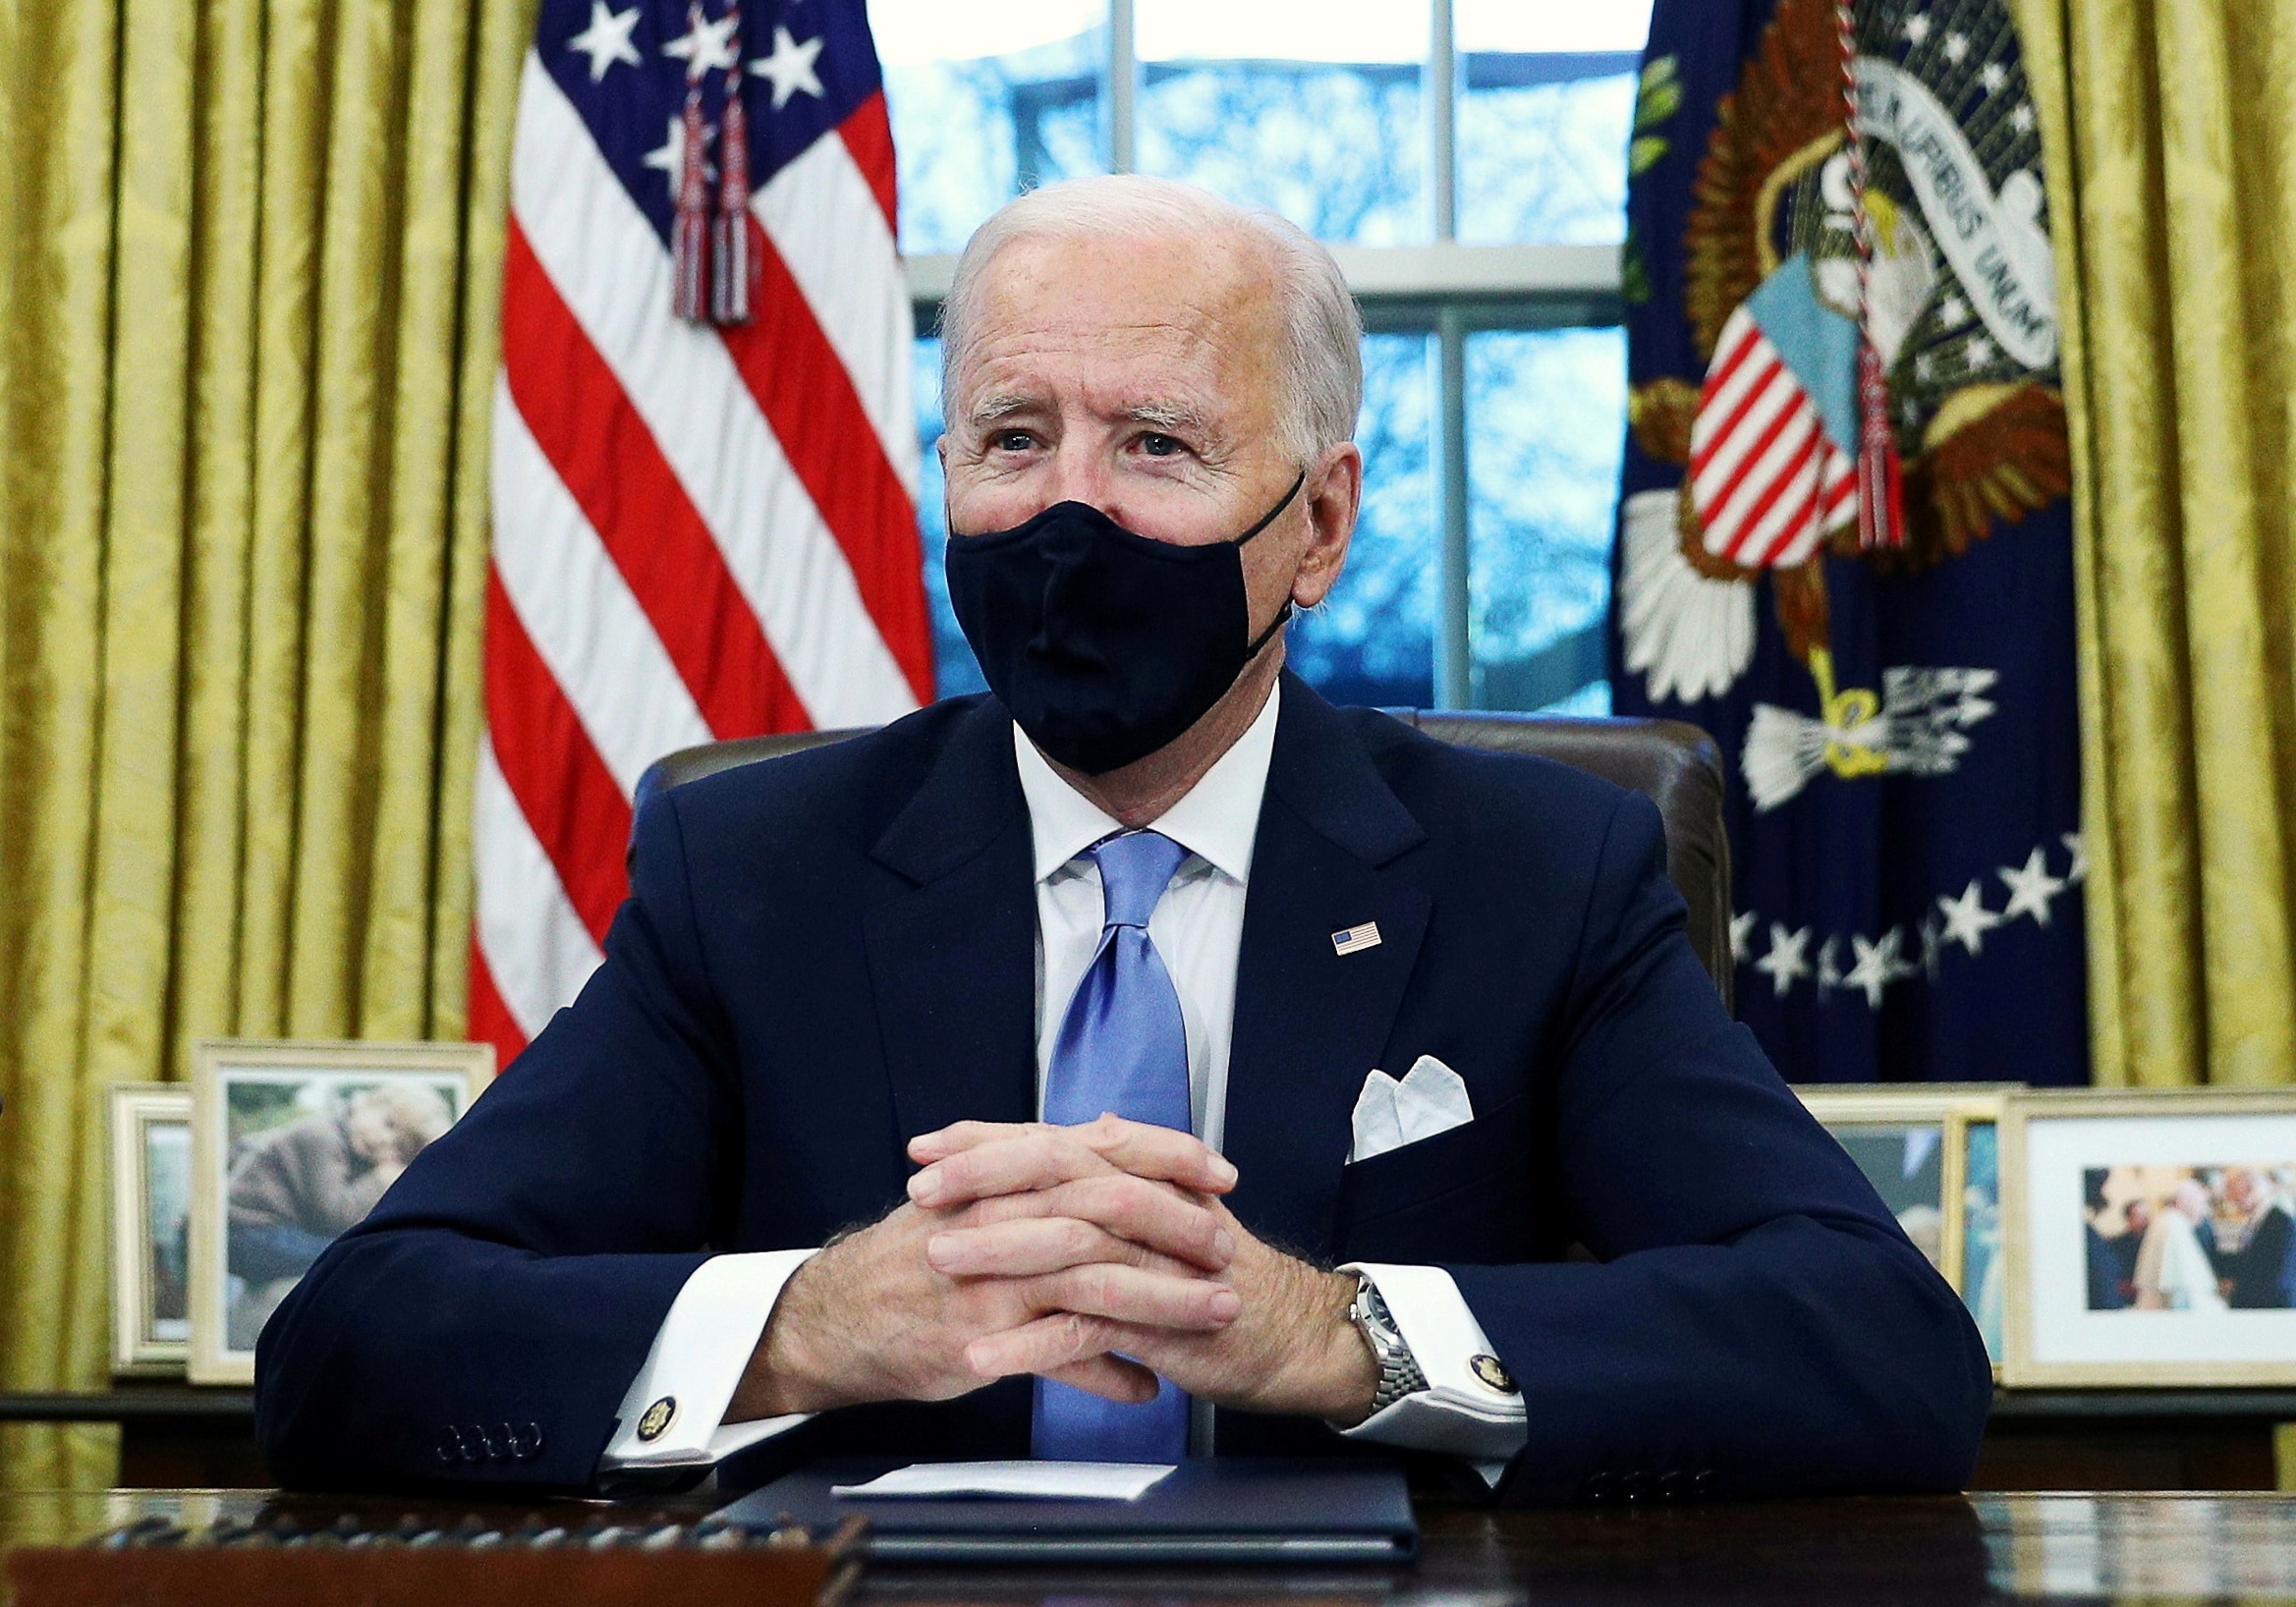 Live - Joe Biden verwijdert beeld en portret van Churchill en omstreden president Andrew Jackson uit Oval Office